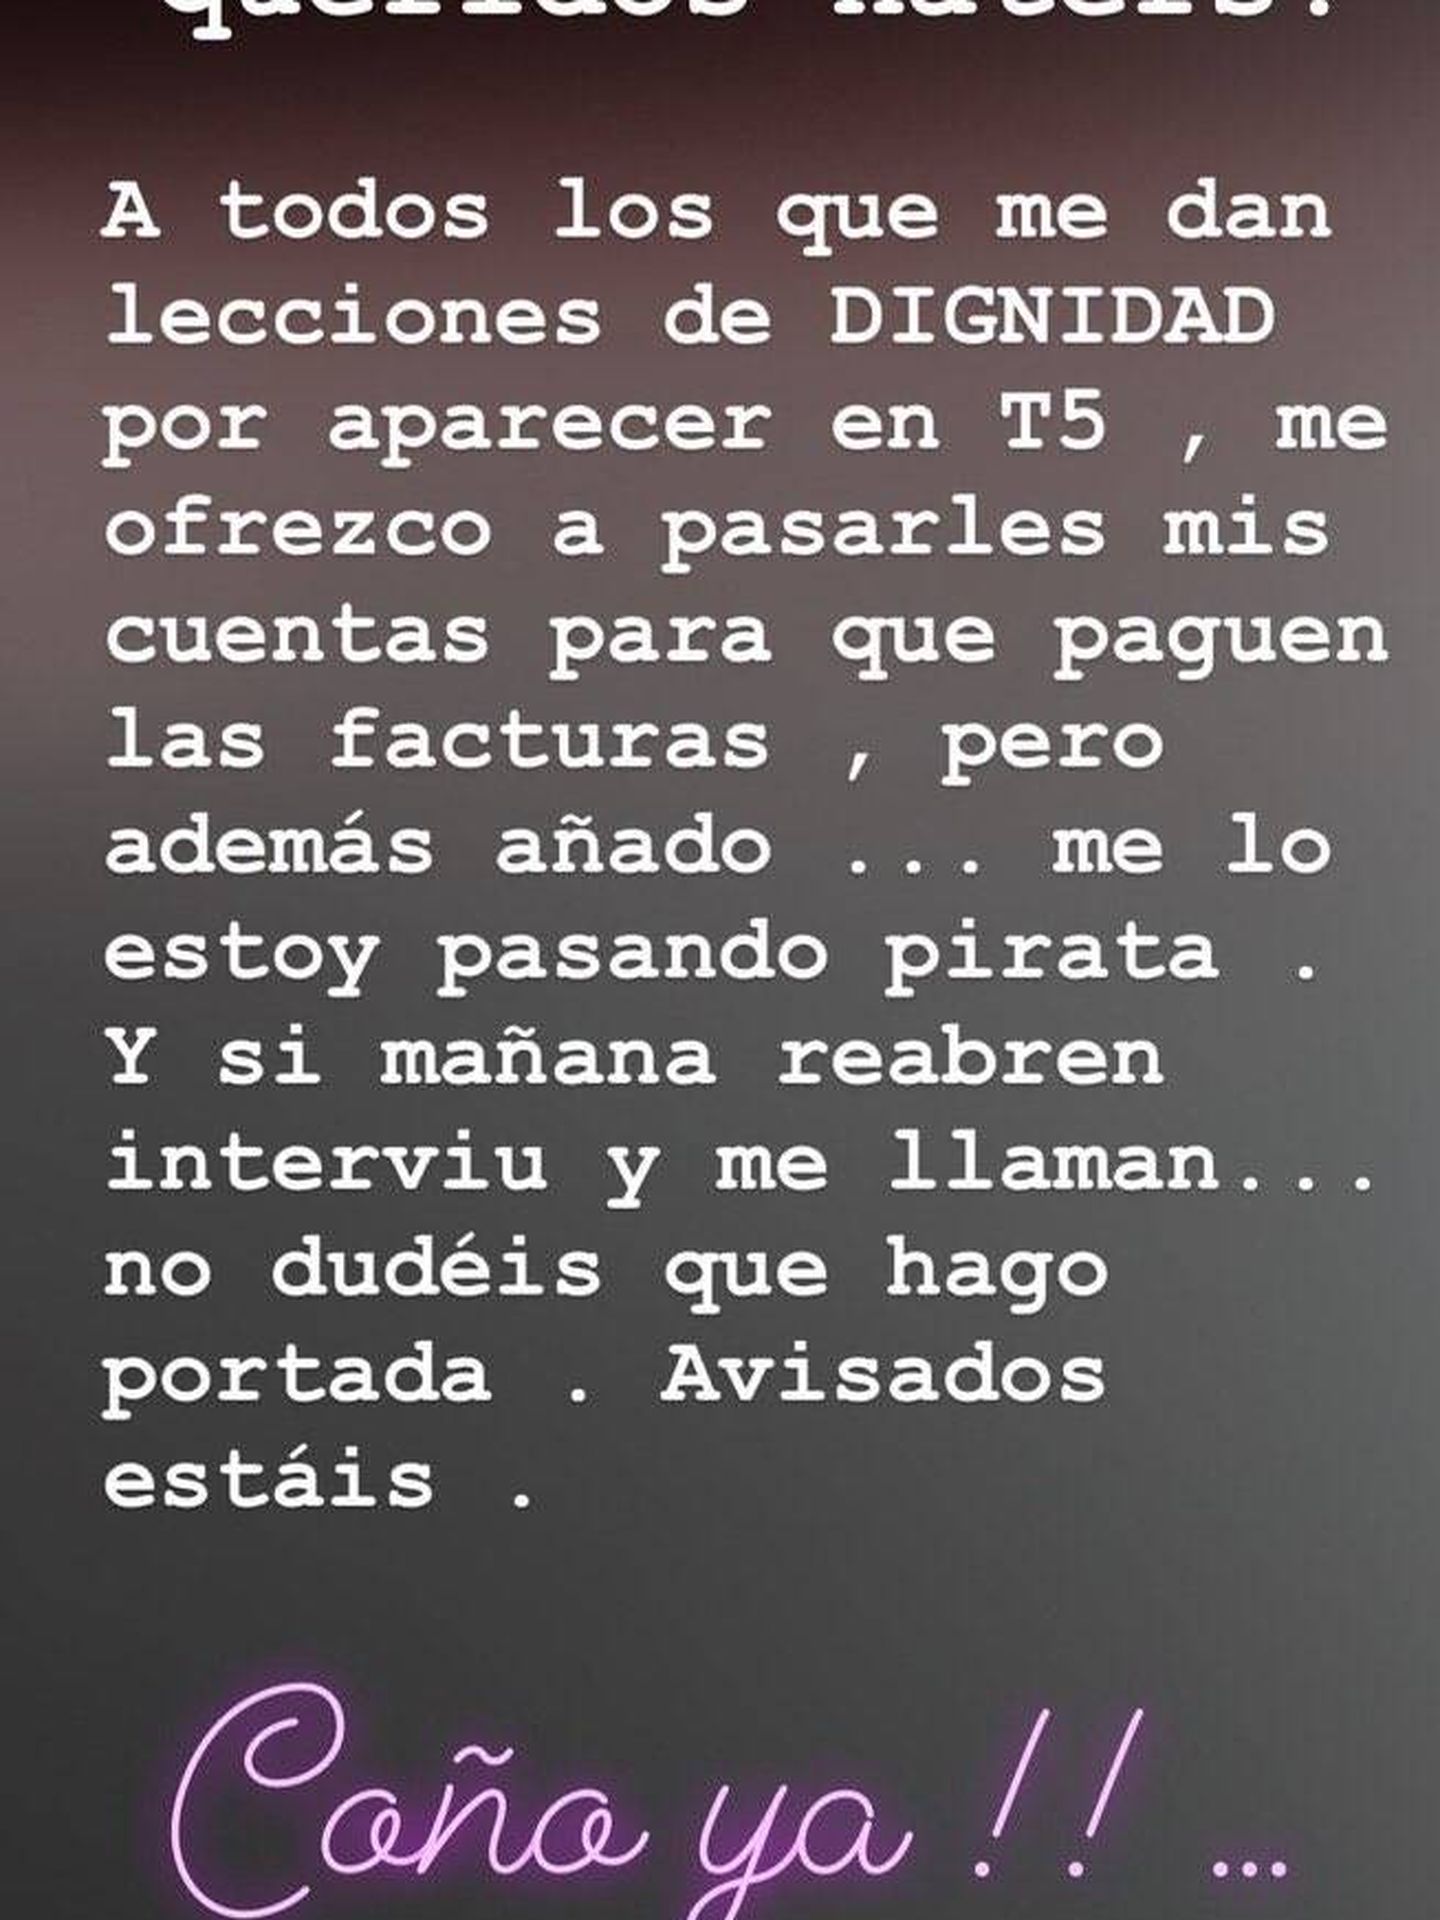 El mensaje de Begoña Rodrigo en redes sociales. (Instagram)